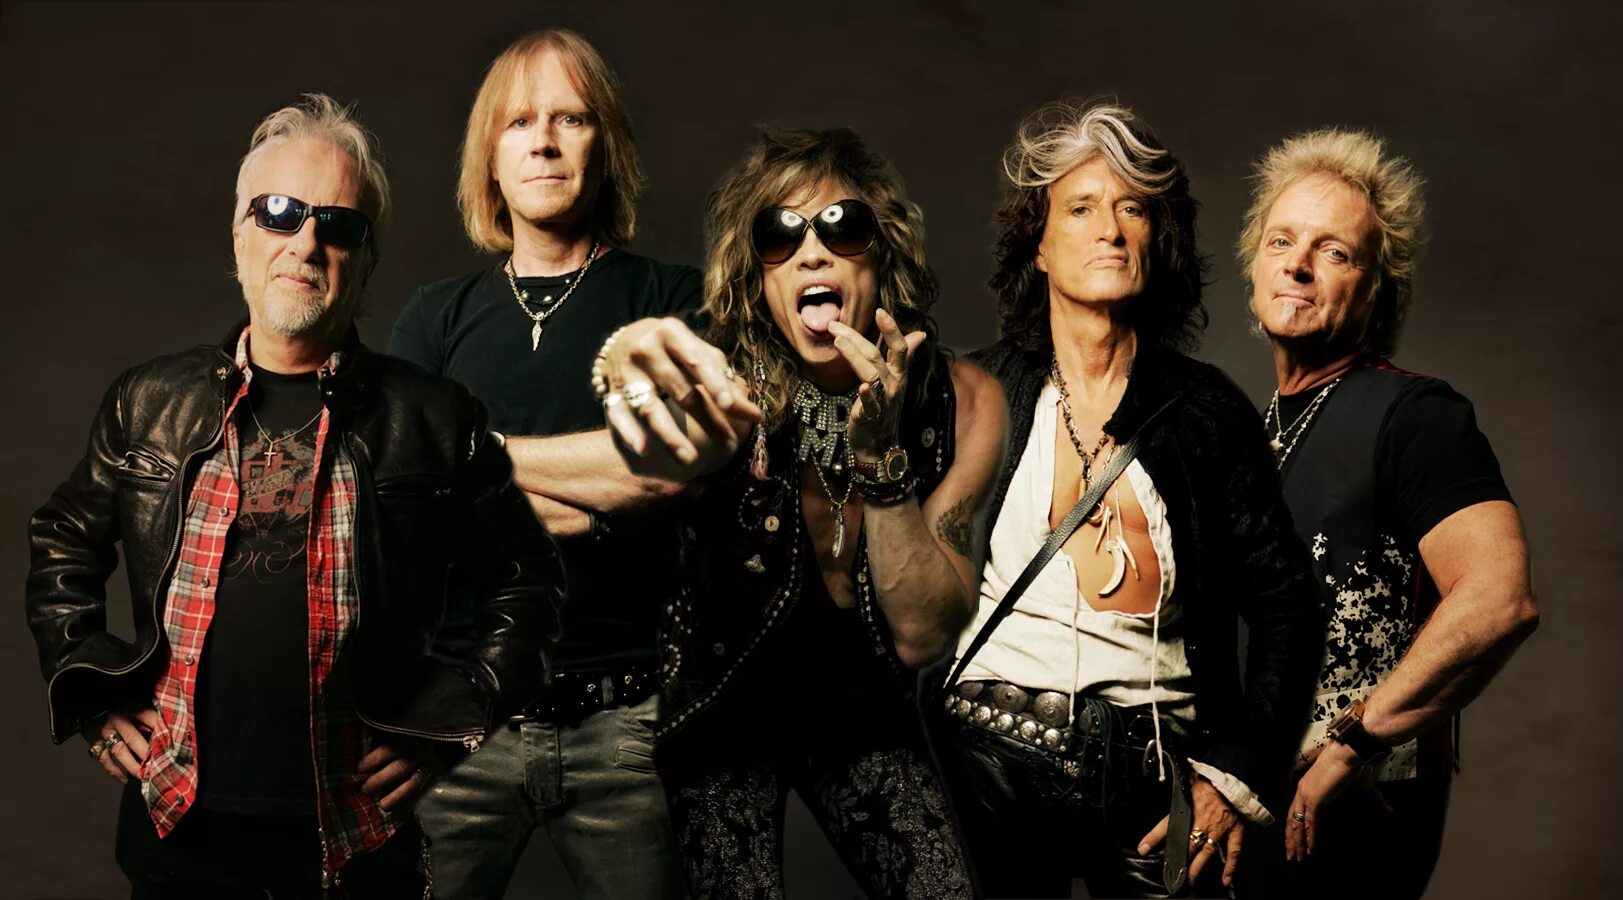 Группа Aerosmith. Аэросмит фото группы. Рок музыкант аэросмит. Aerosmith 1991.